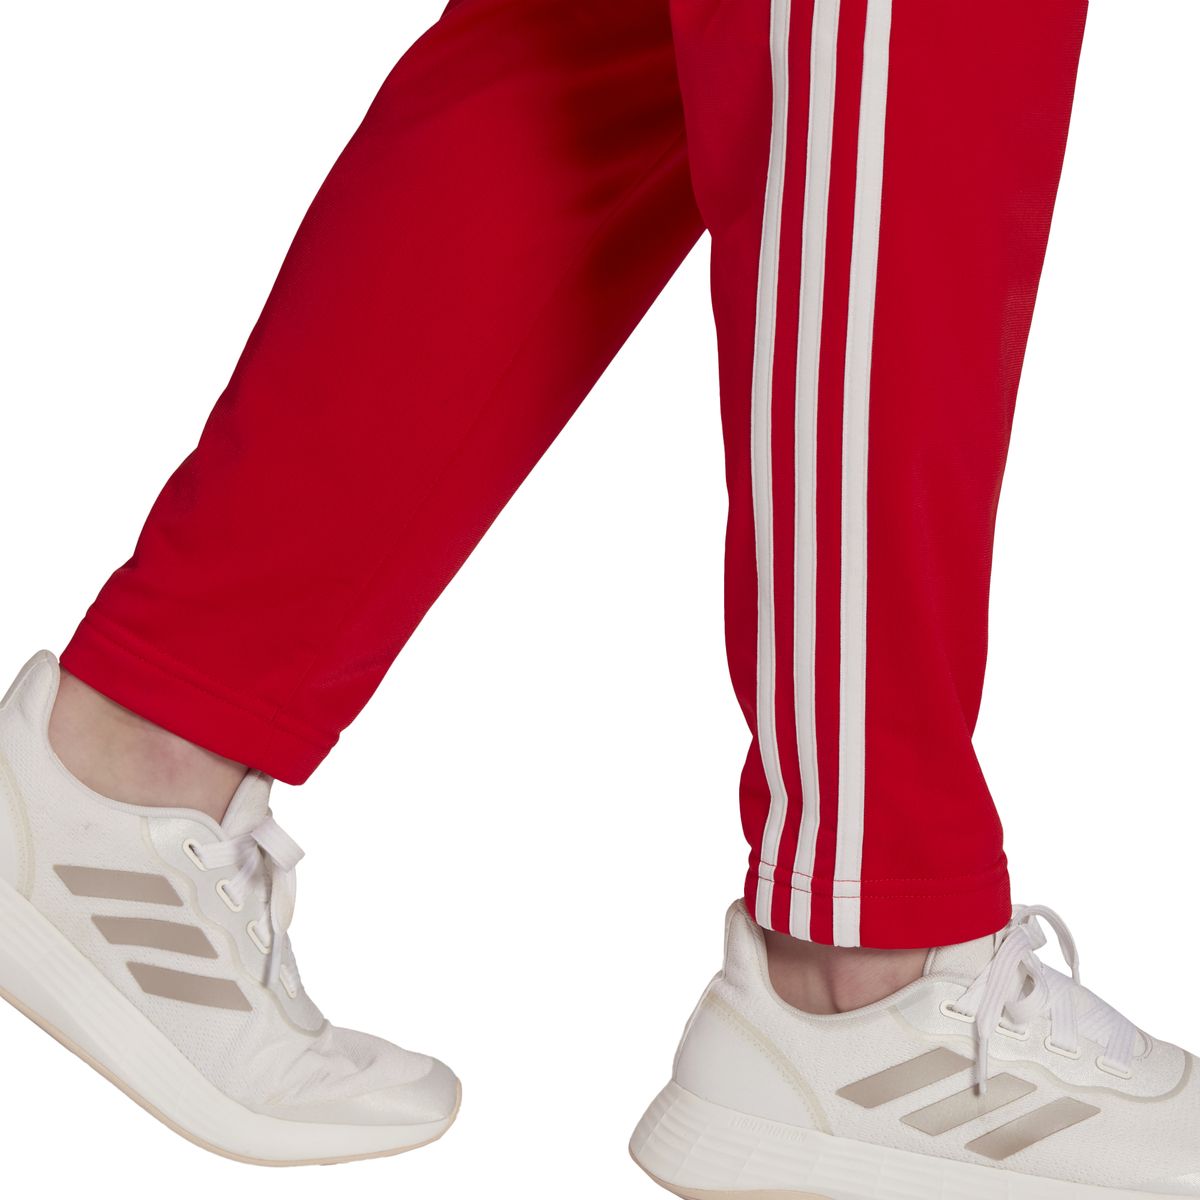 Adidas Essentials 3-Streifen Trainingsanzug Damen_3